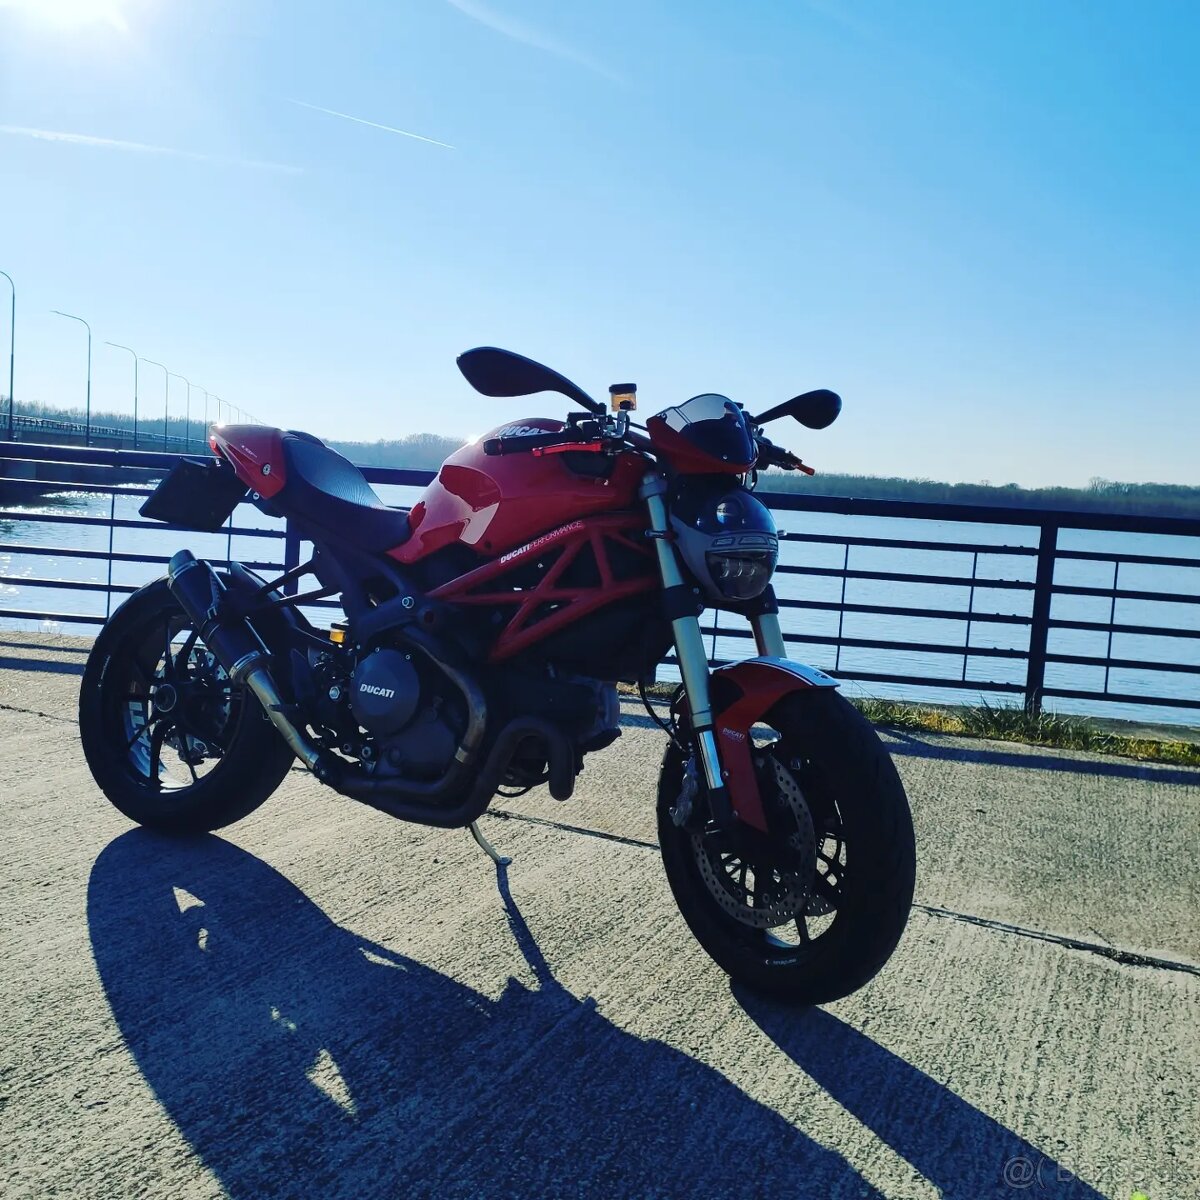 Ducati Monster 1100 evo abs